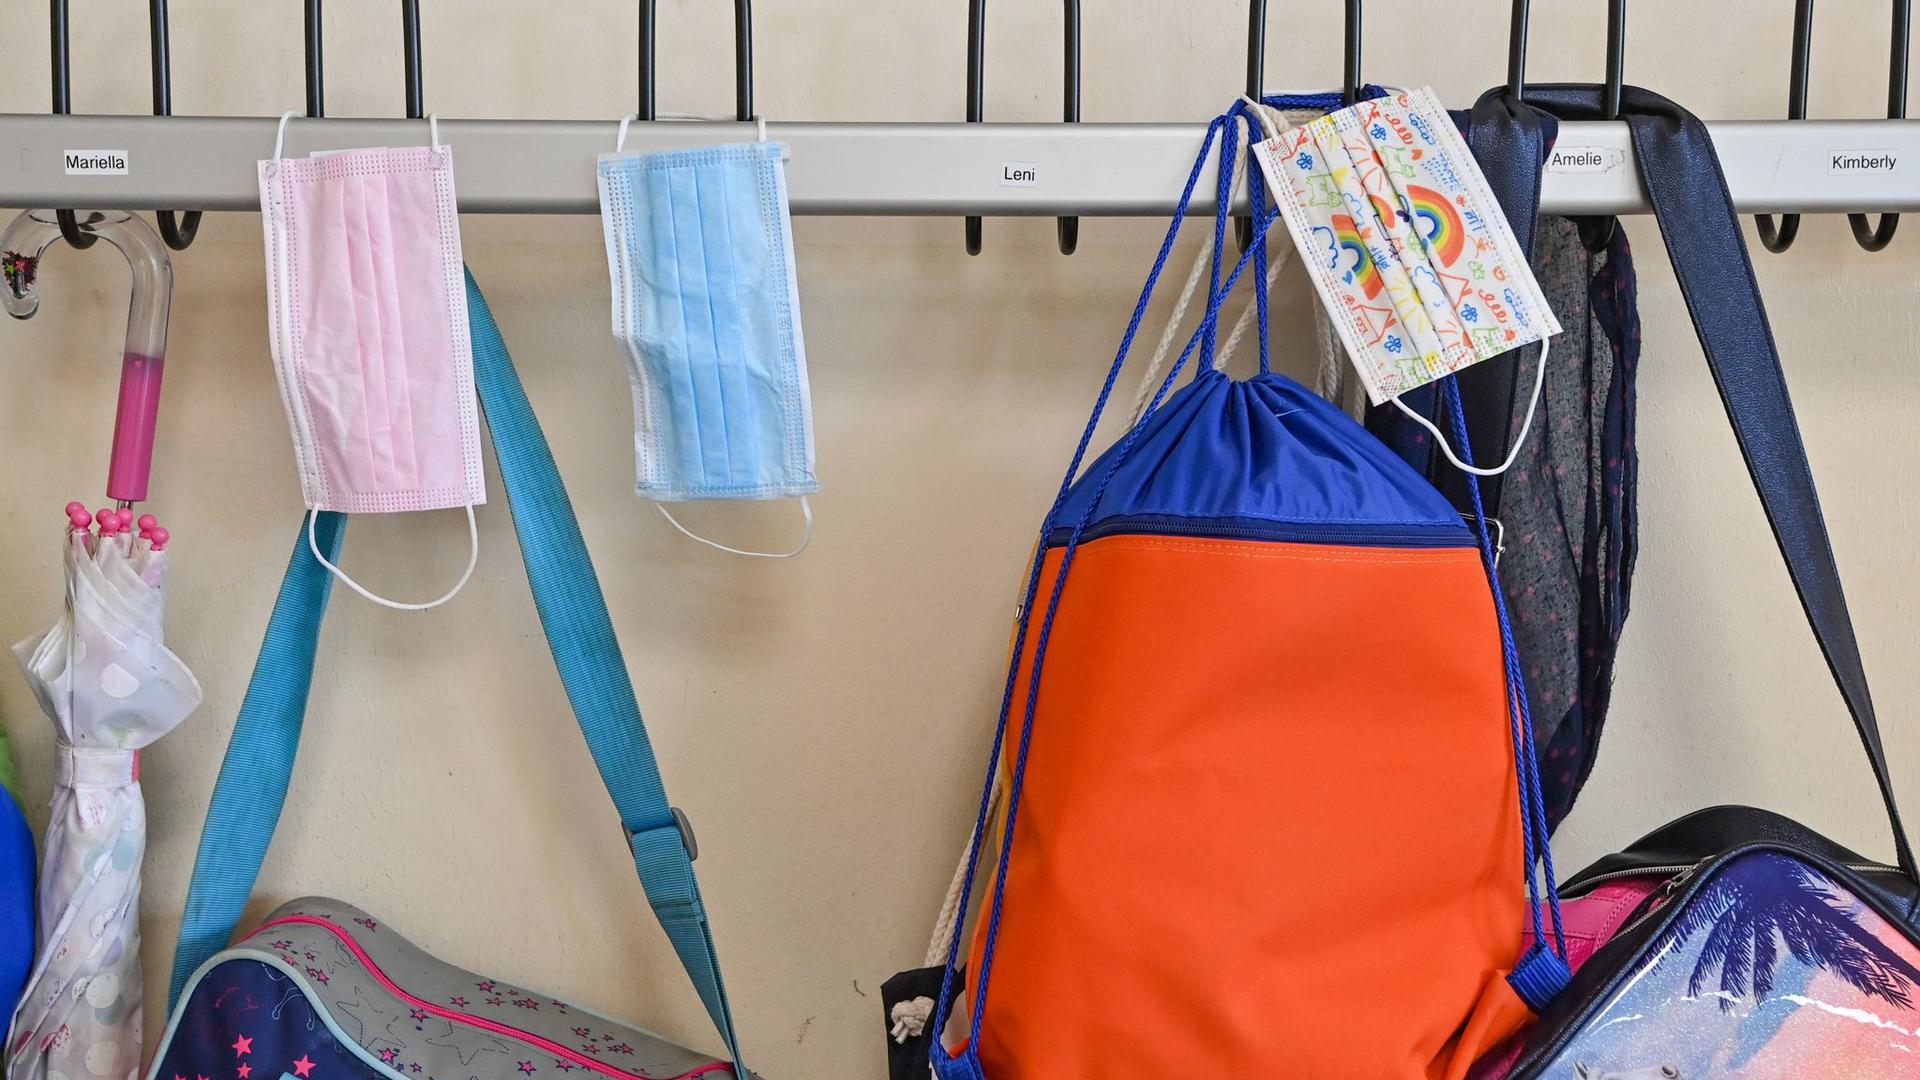 Masken und Taschen hängen in einer Grundschule an Kleiderhaken.